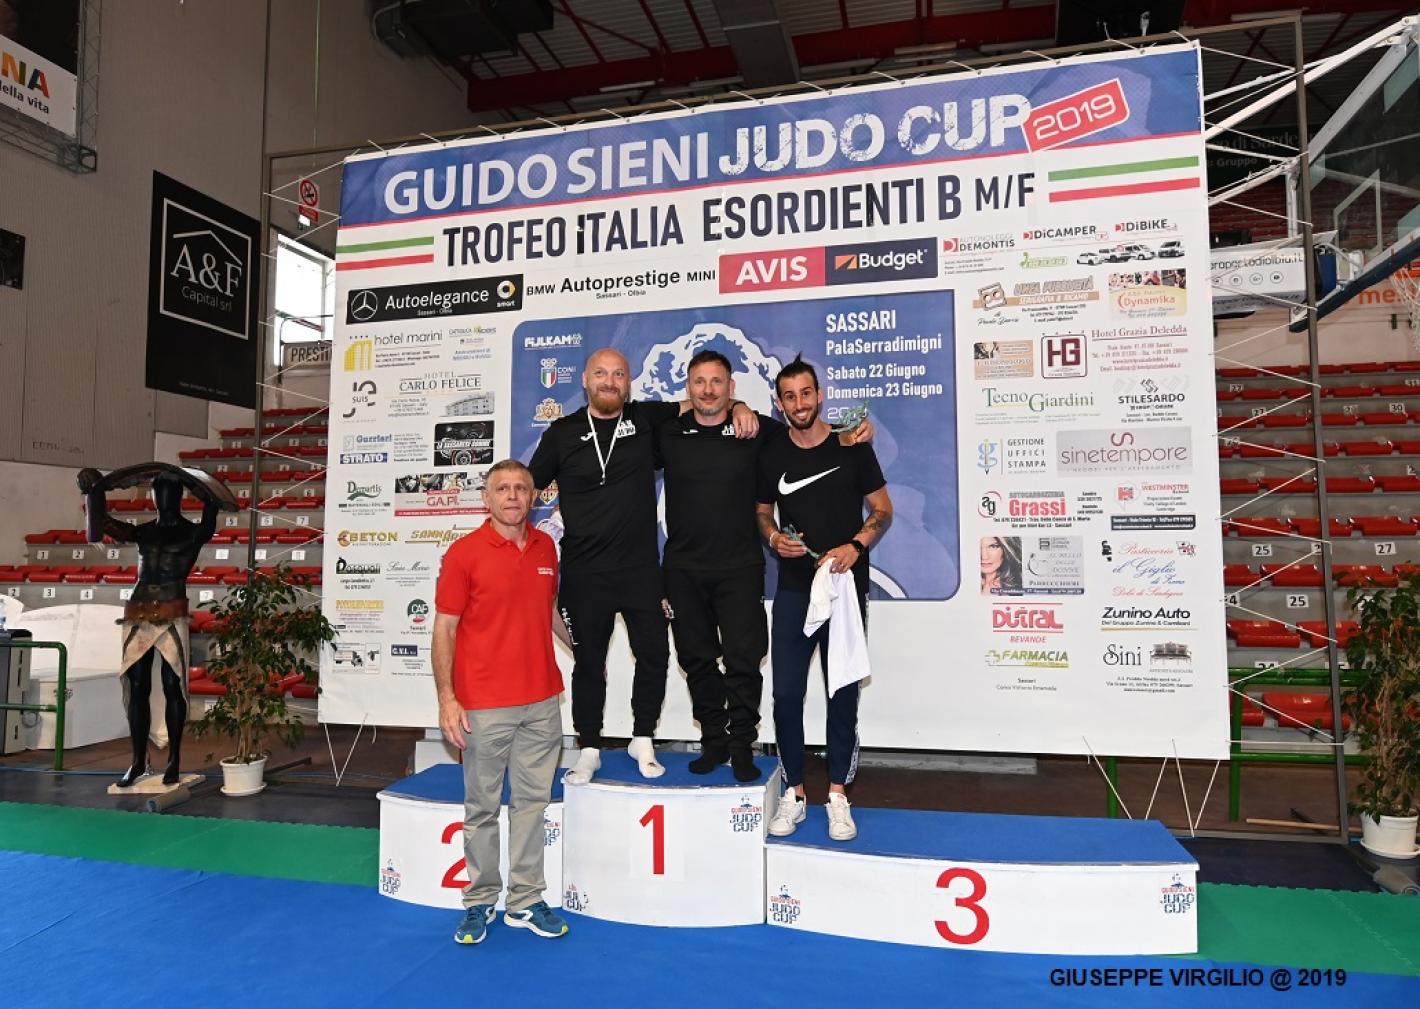 images/sardegna/Settore_Judo/2019/GUIDO_SIENI_JUDO_CUP_2019/medium/Premiazione_squadre_esordienti_B_-_a_sin_Stefano_Urgeghe_maglia_rossa.JPG